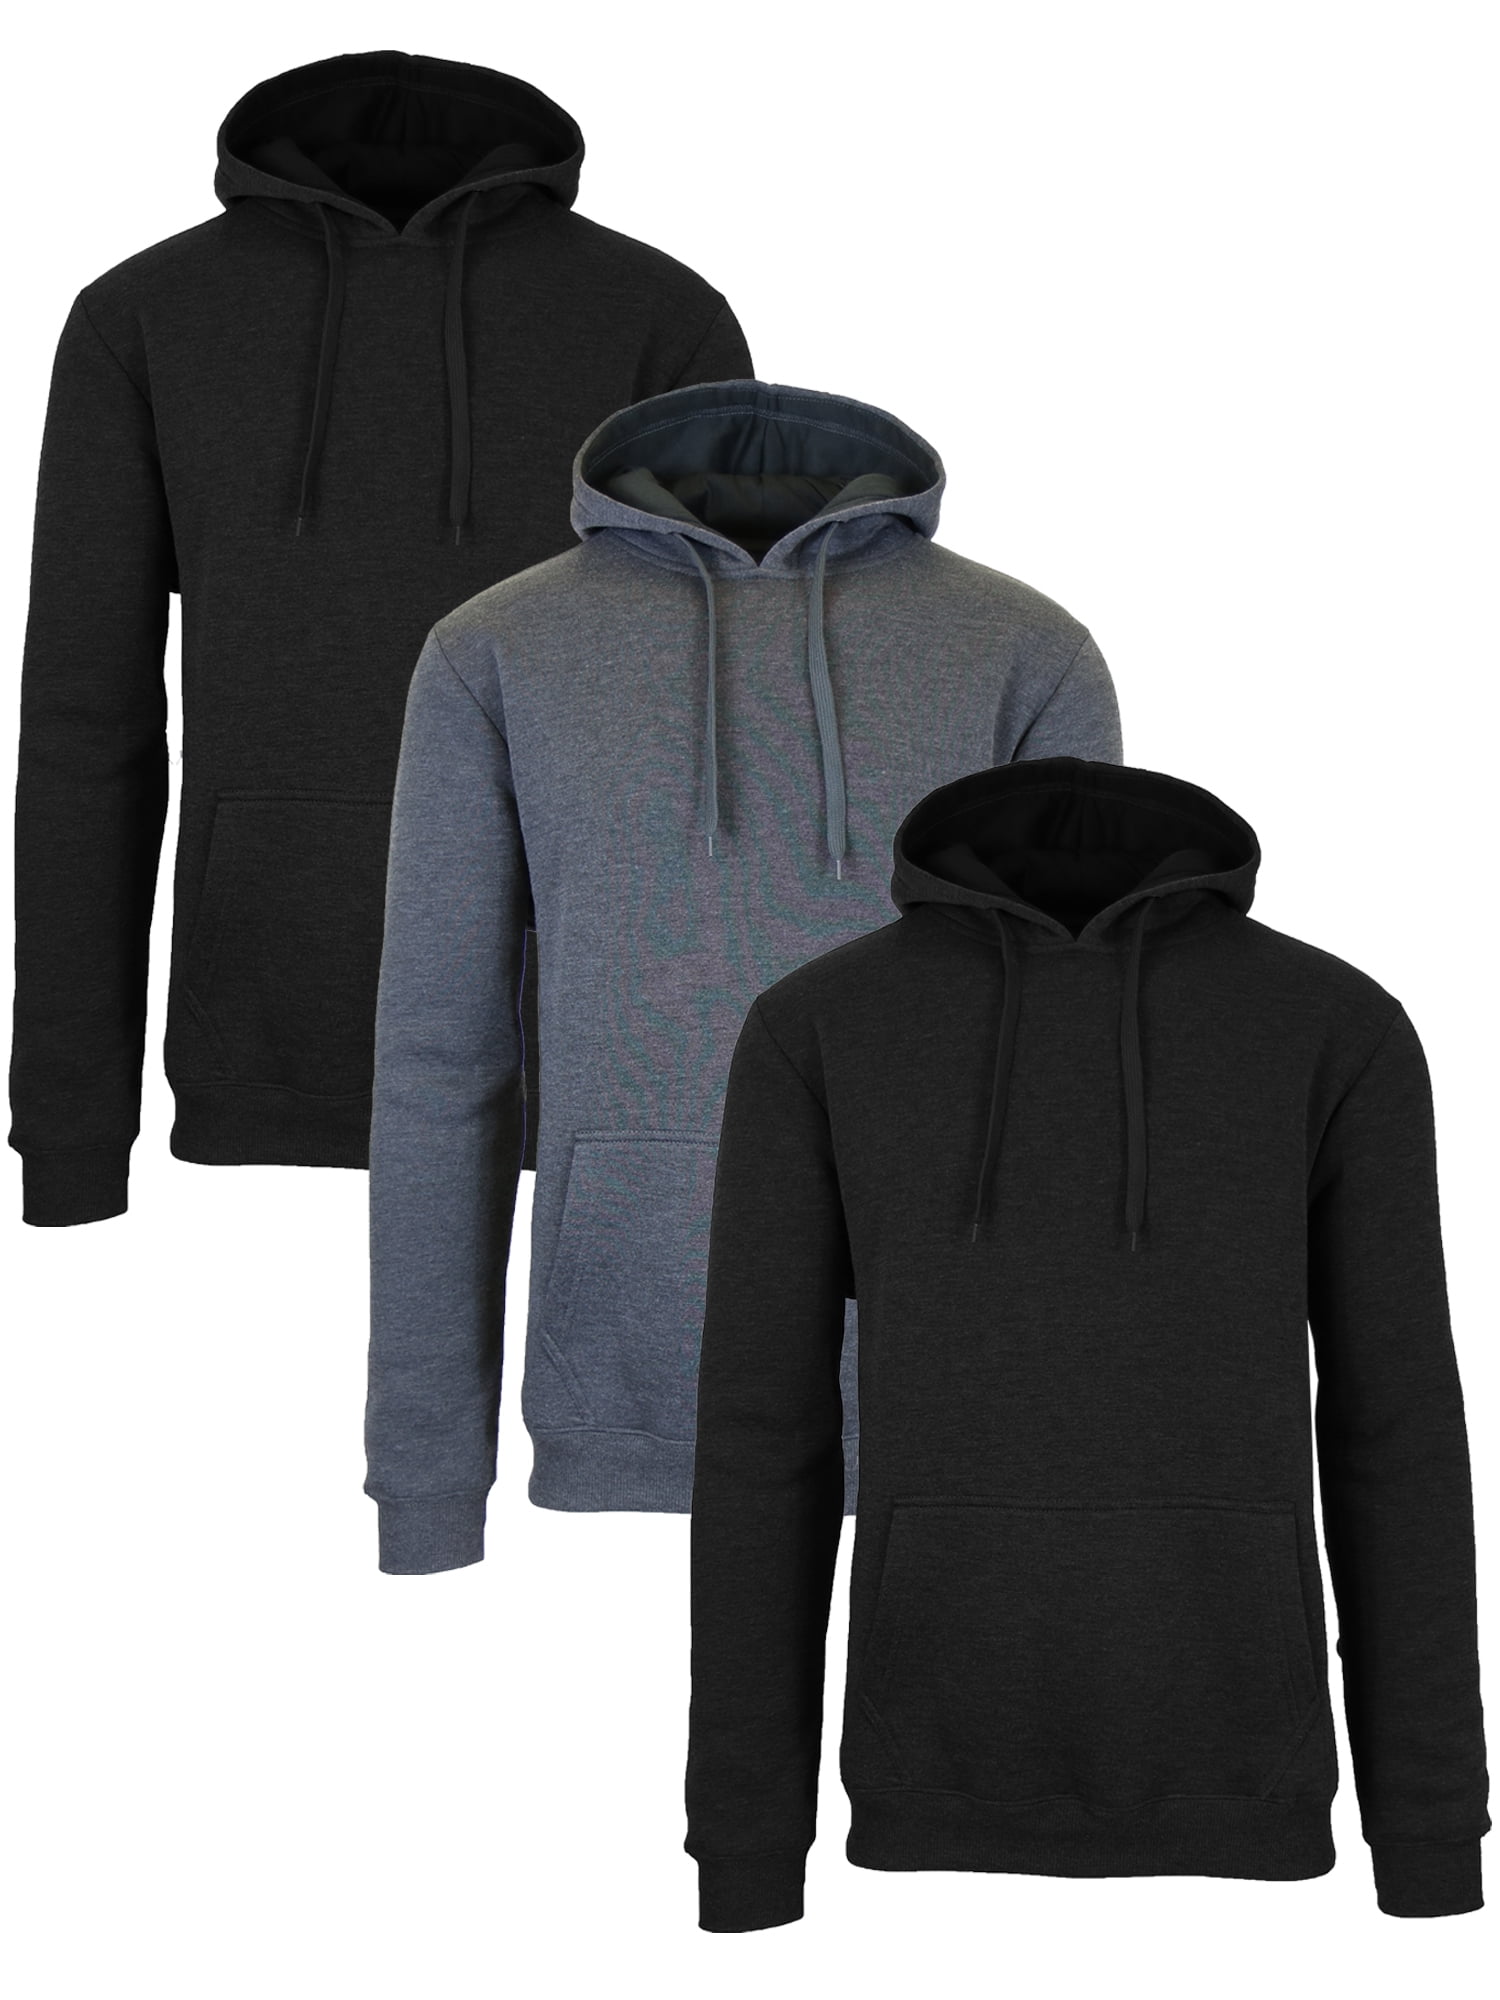 Men's Fleece-Lined Pullover Hoodie Sweatshirts (3-Pack) - Walmart.com